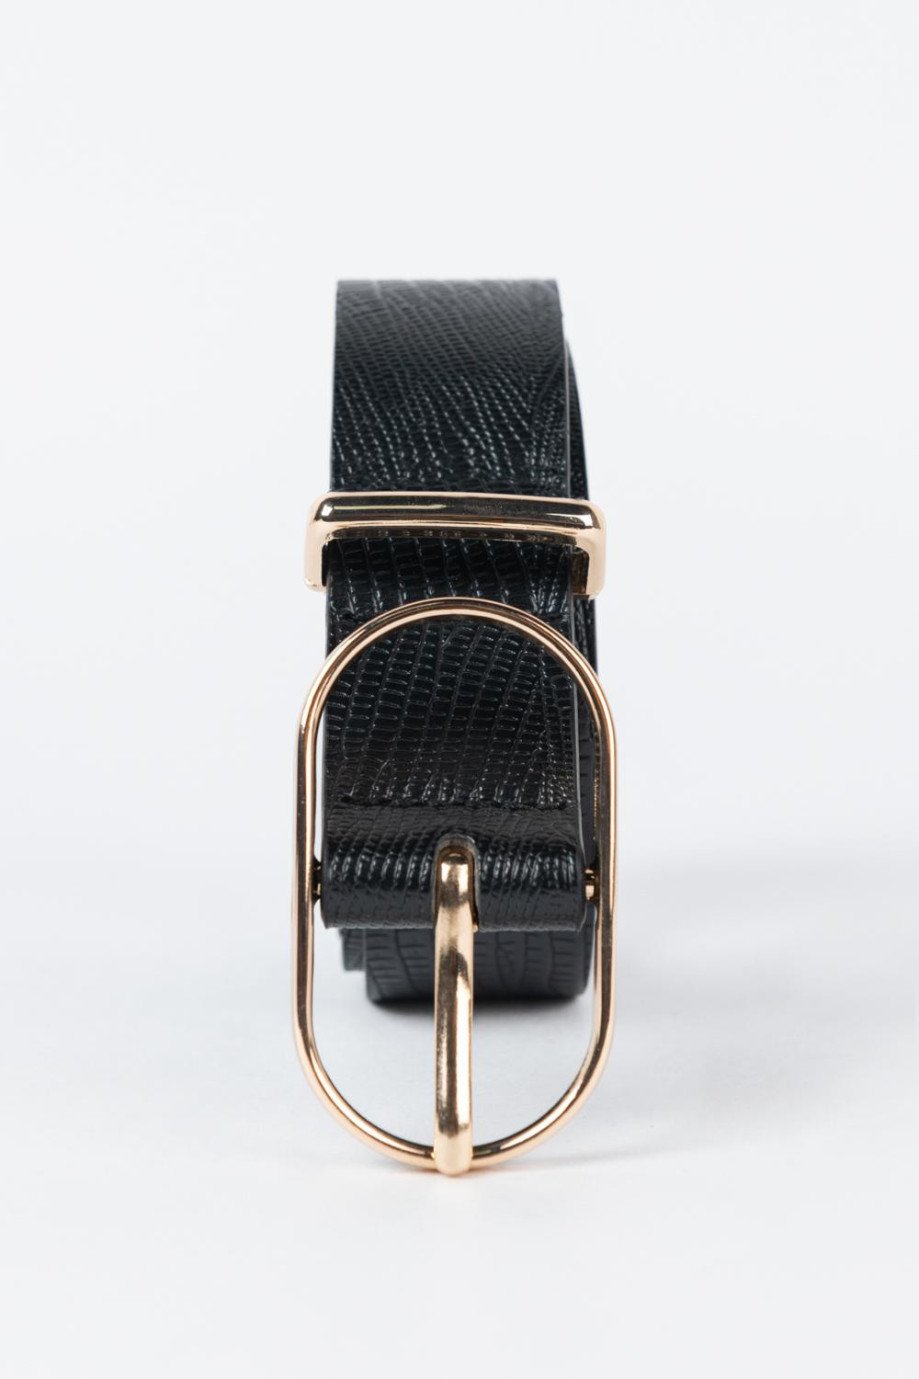 Cinturón sintético con hebilla ovalada dorada y detalles con texturas